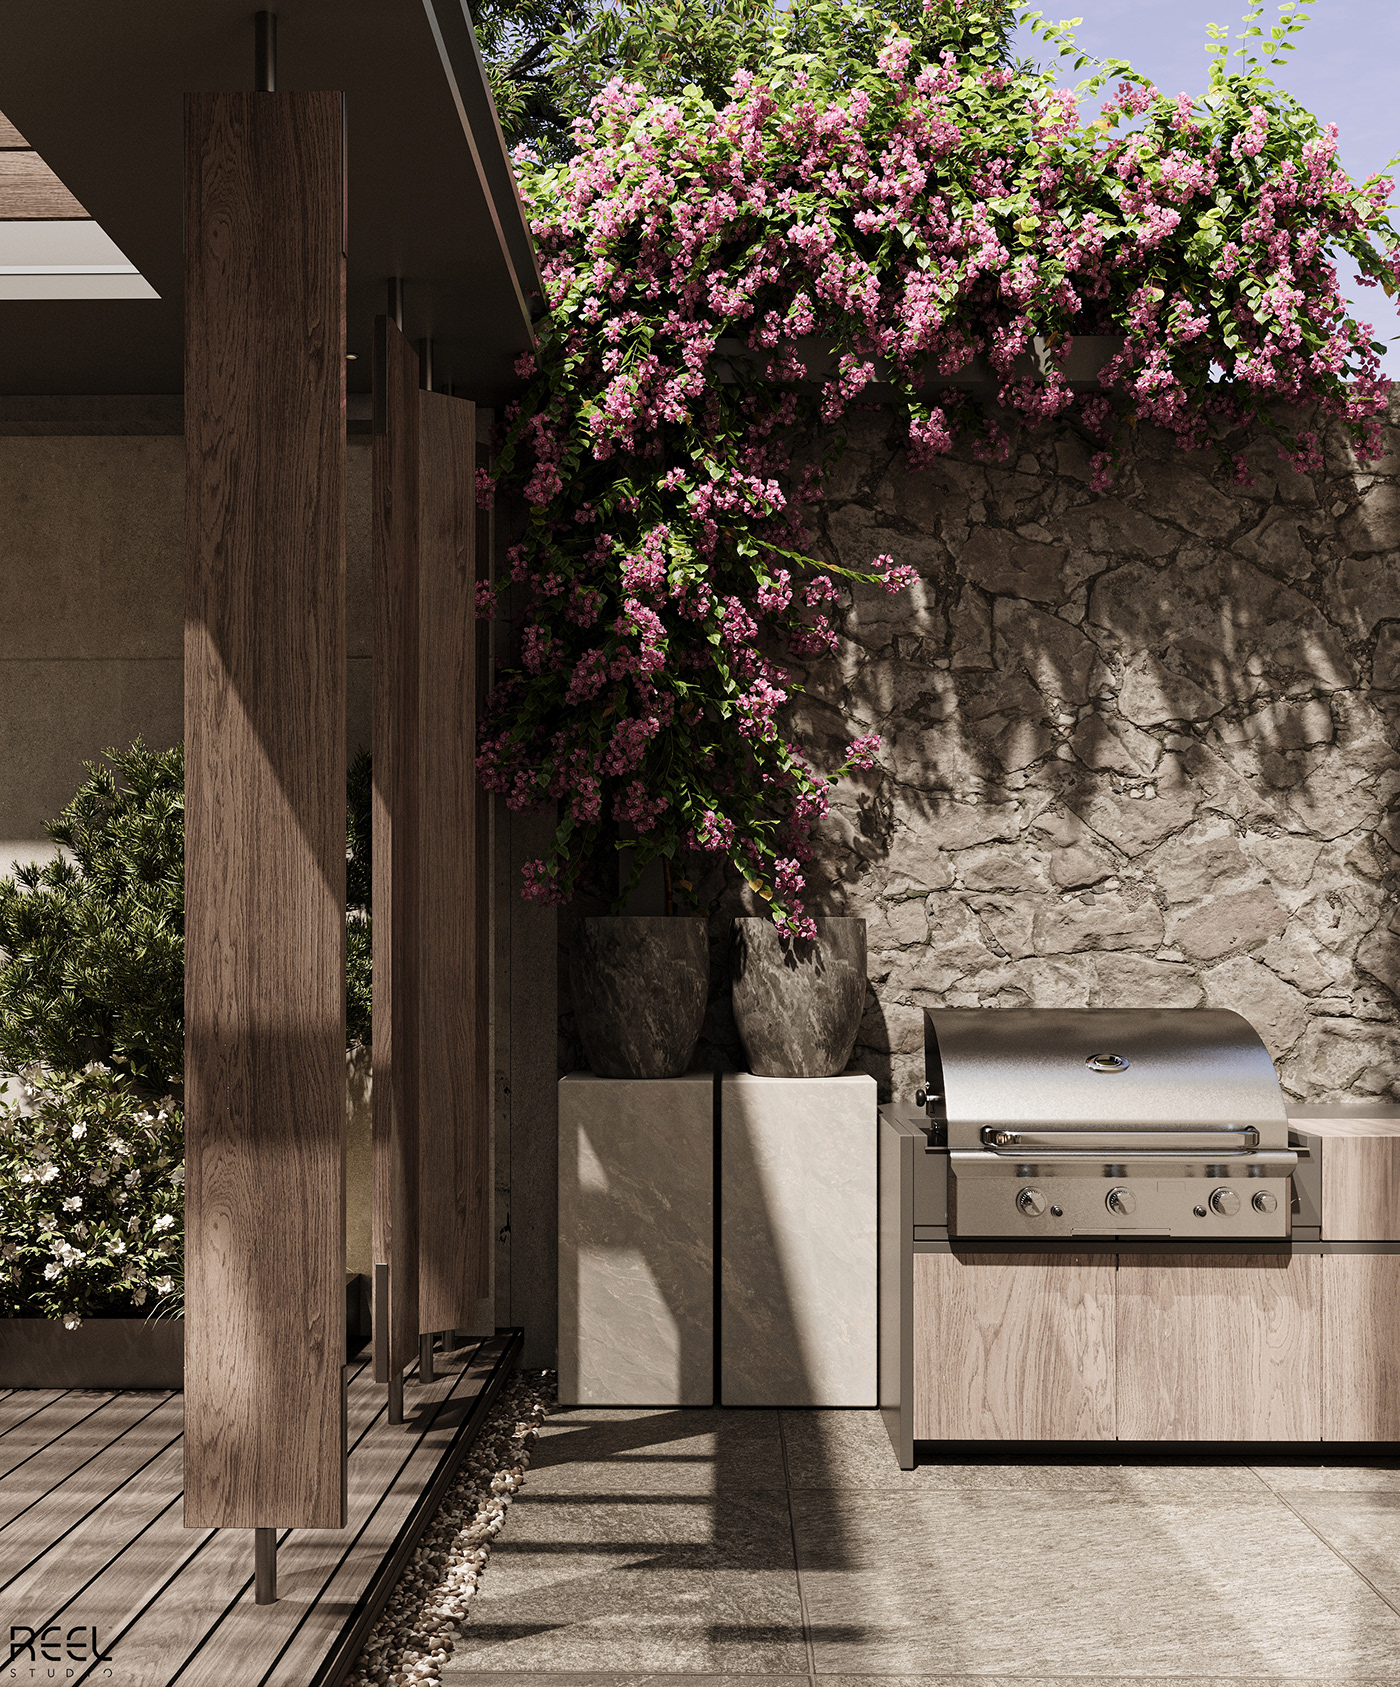 architecture Landscape design visualization archviz Outdoor garden Render 3D interior design 